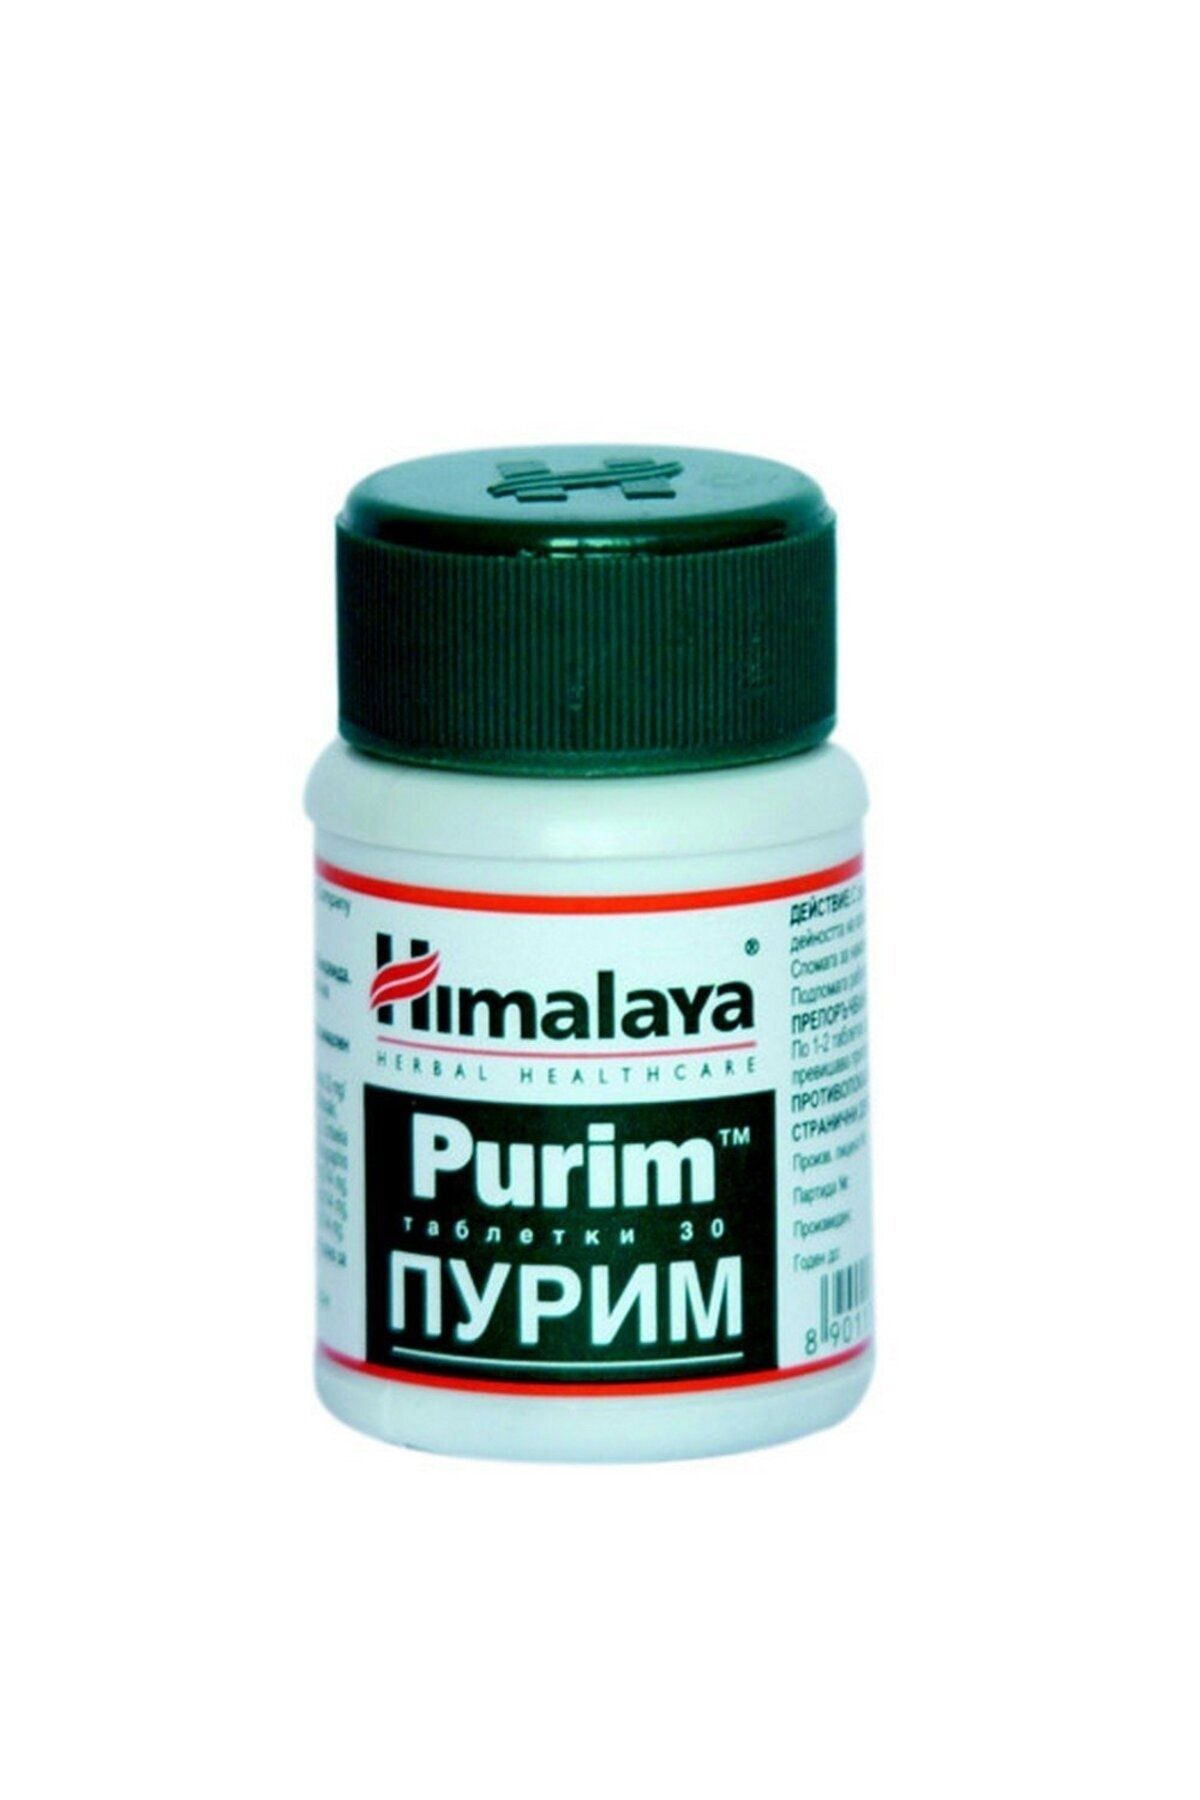 Himalaya Purim 30 Tablet - Sivilve Giderici